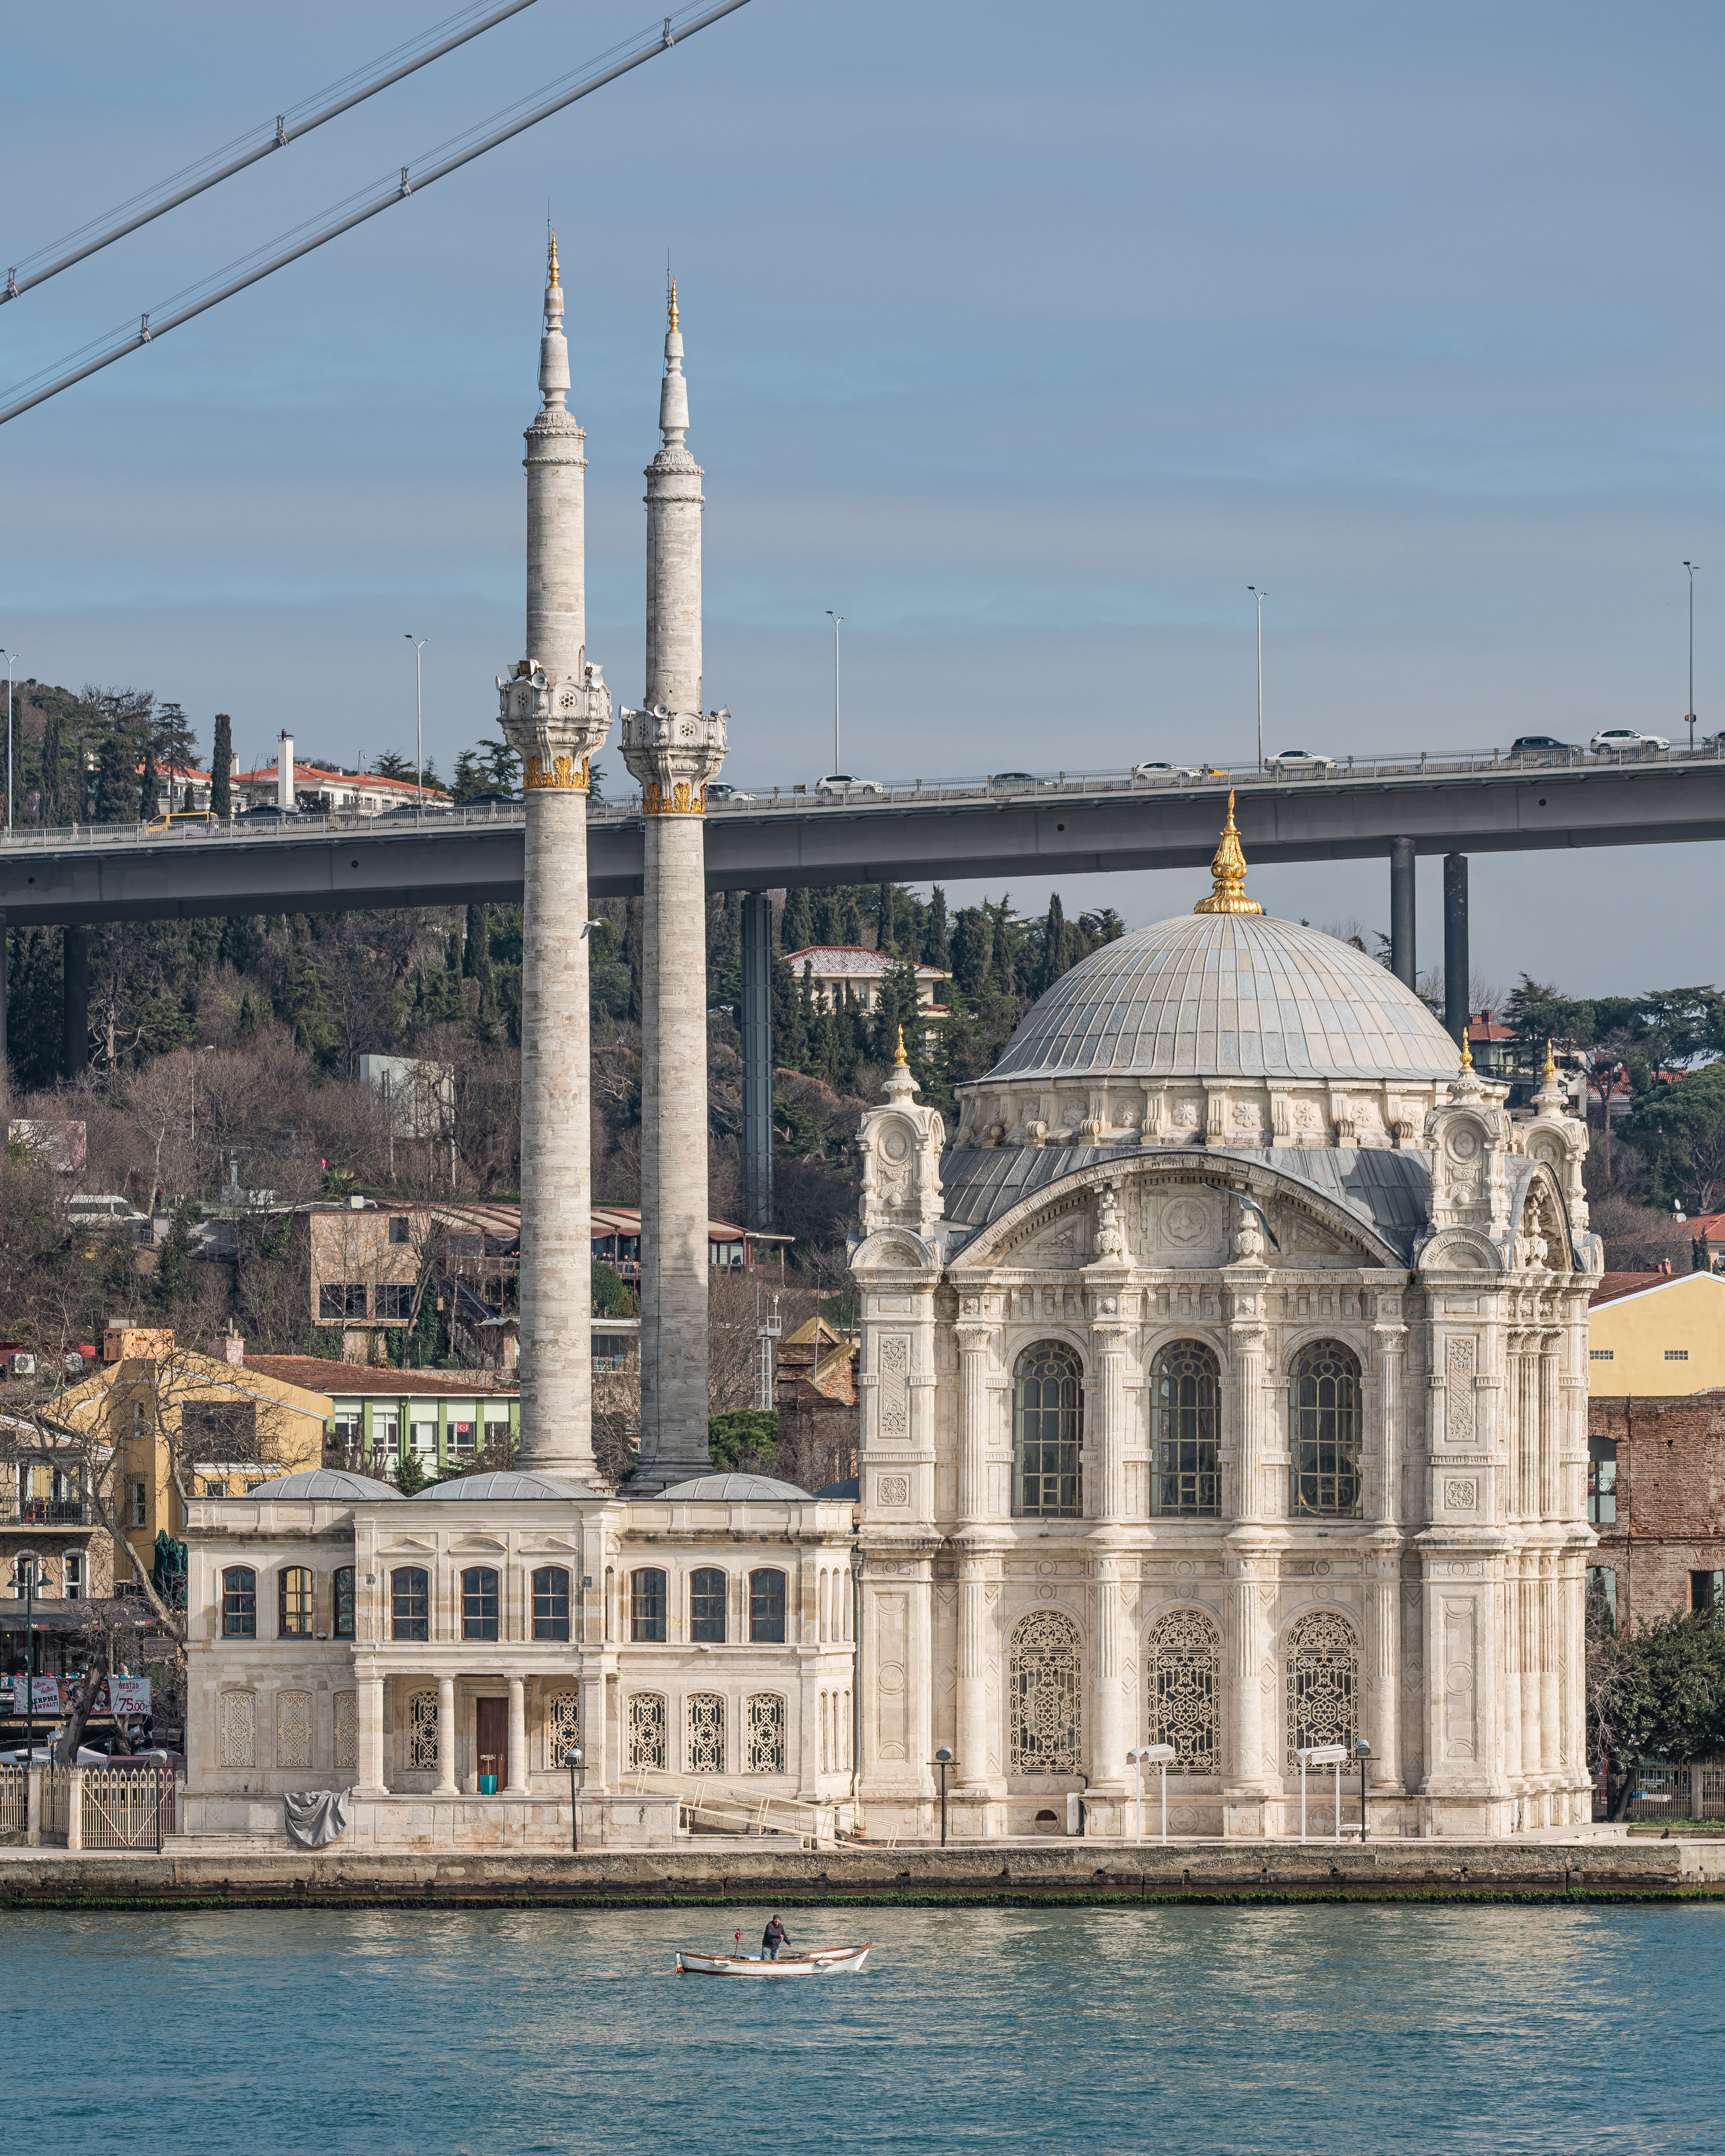 Мечеть Ортакёй (Ortaköy Camii), официальное название в Стамбуле. Построена в 1853—1854 годах по проекту архитектора Никогоса Бальяна. Фото: A.Savin. Источник: Wikimedia Commons